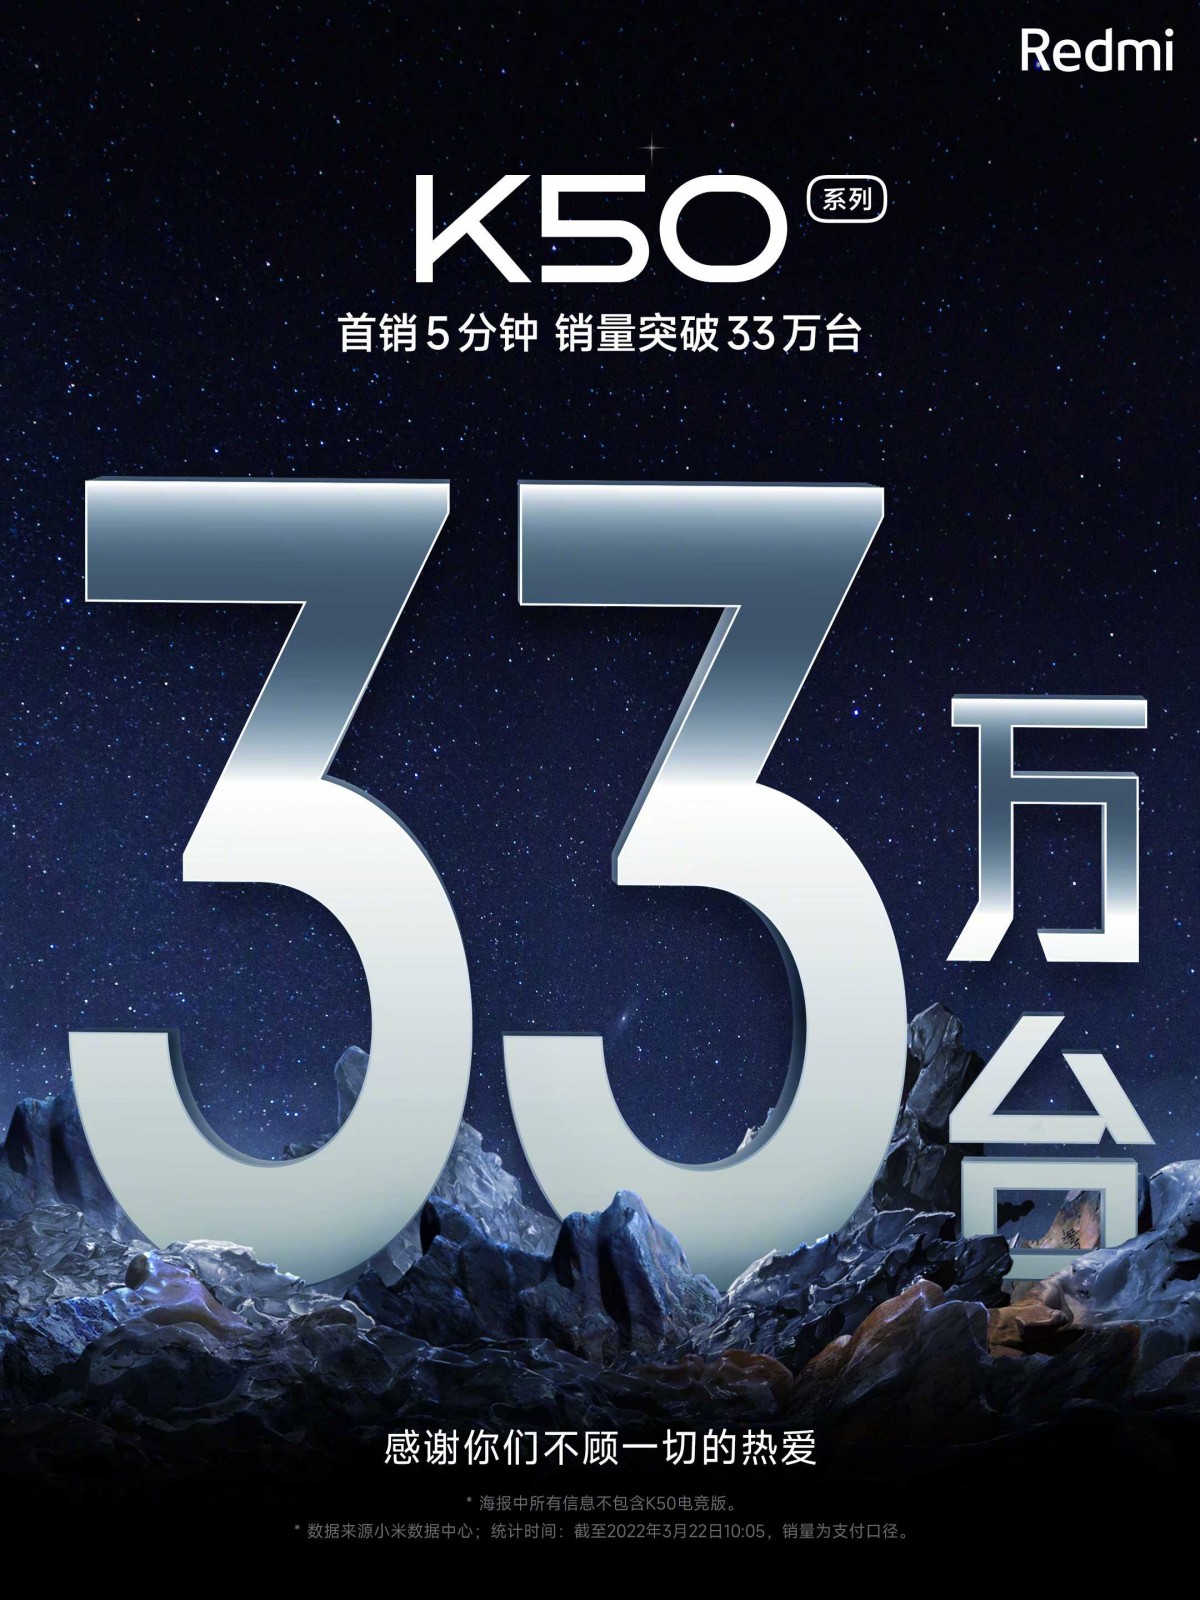 Redmi K50 series sells in 330,000 units